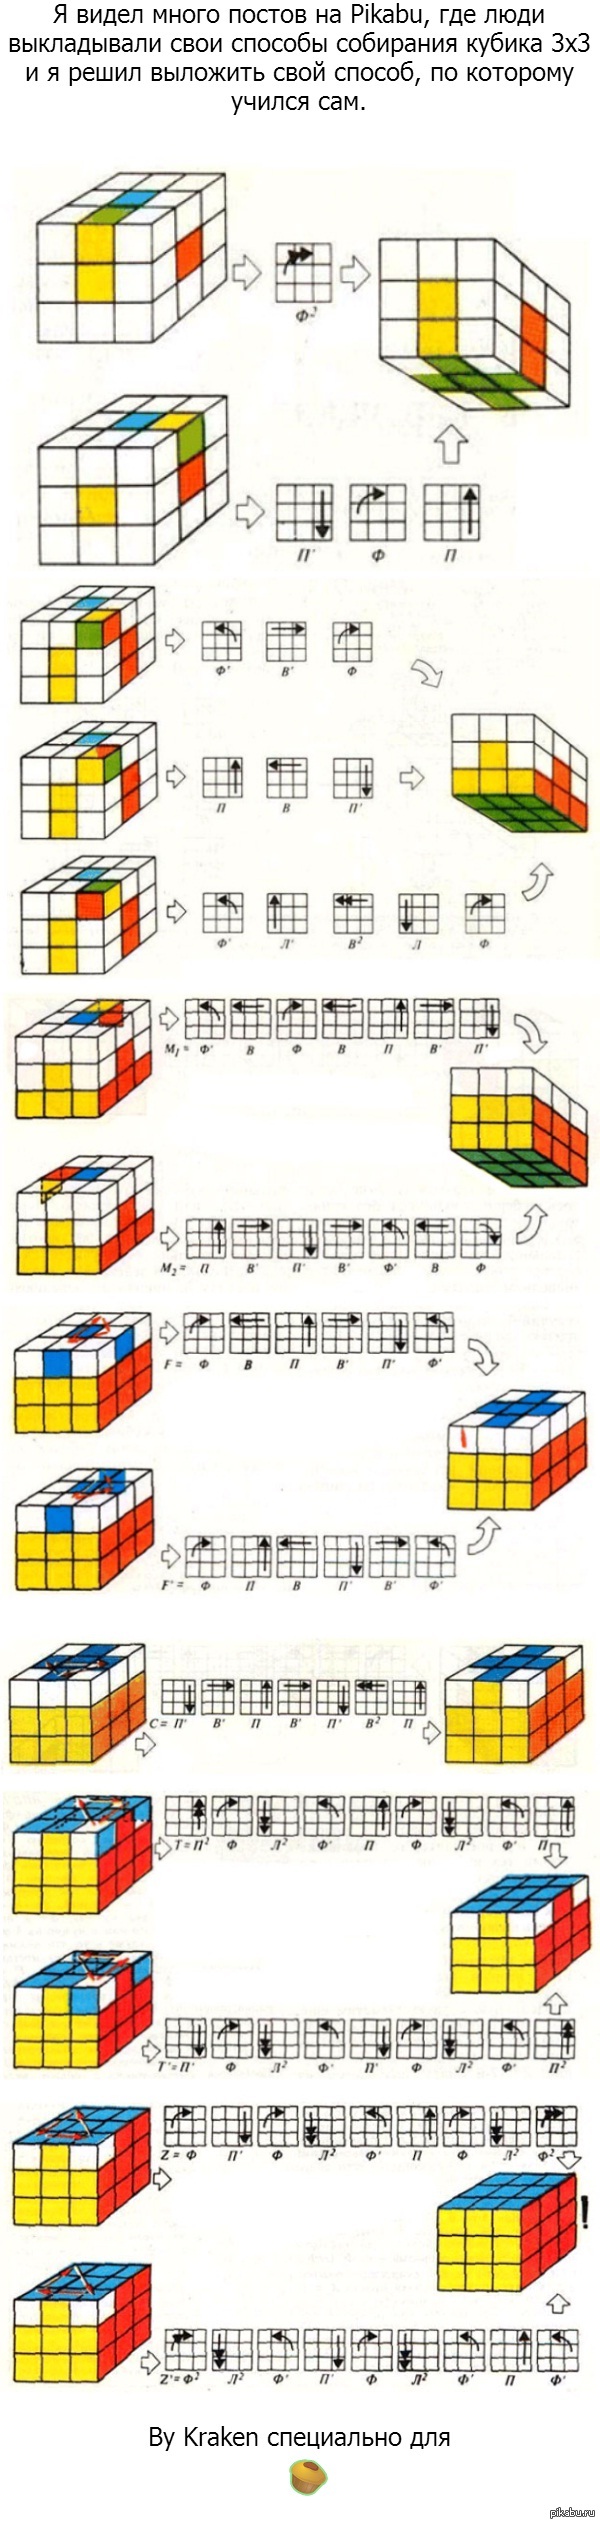 Схема сборки кубика Рубика 3х3. Алгоритмы кубика Рубика 3 на 3.